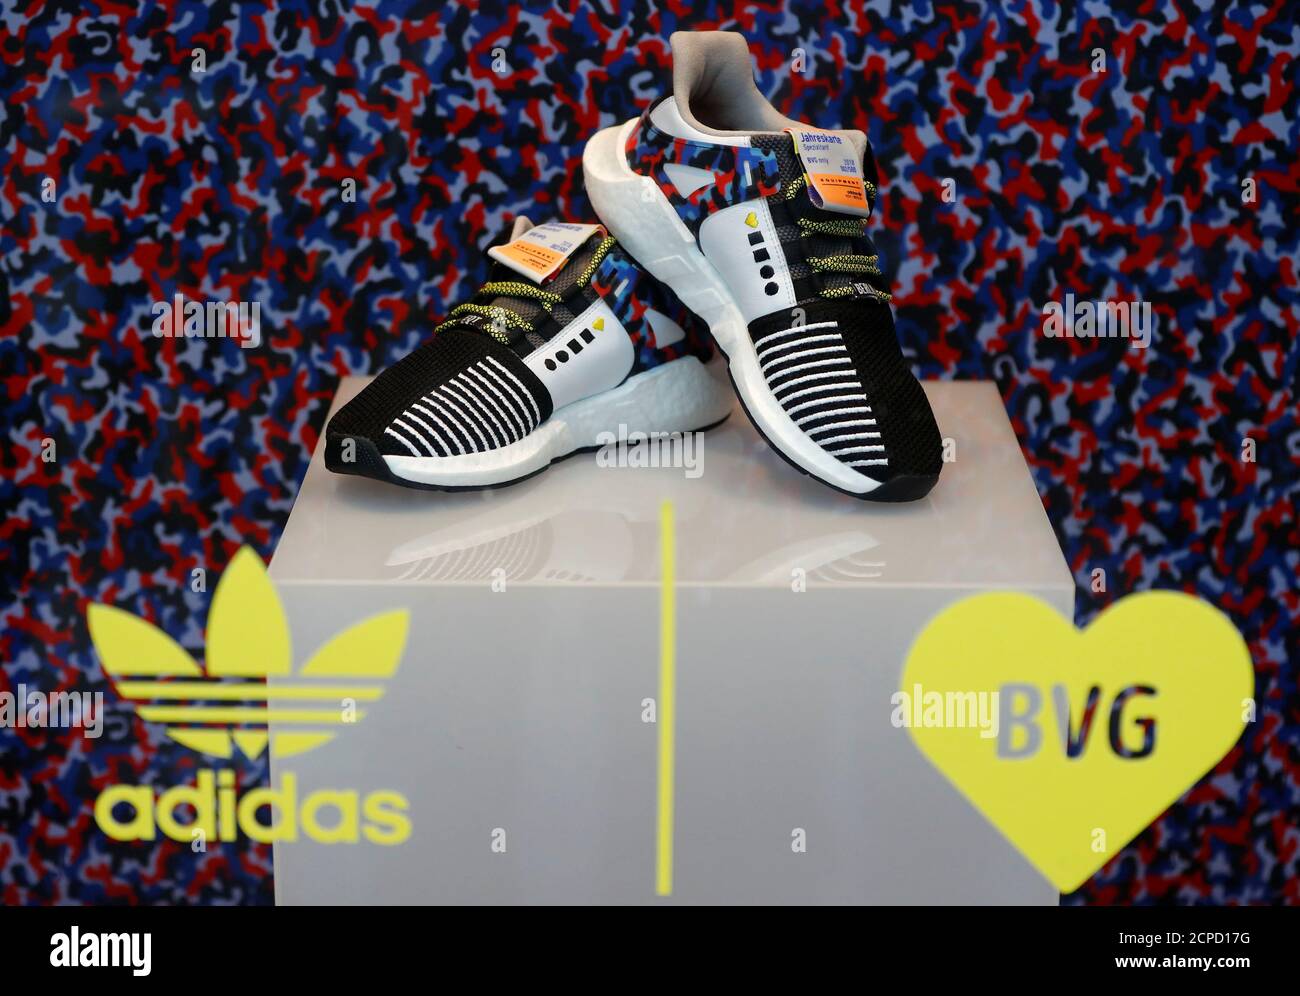 Le sneaker Adidas in edizione limitata che si adattano al design della  metropolitana di Berlino e includono un pass di viaggio annuale, sono  esposte presso il negozio di scarpe "Overkill" di Berlino,